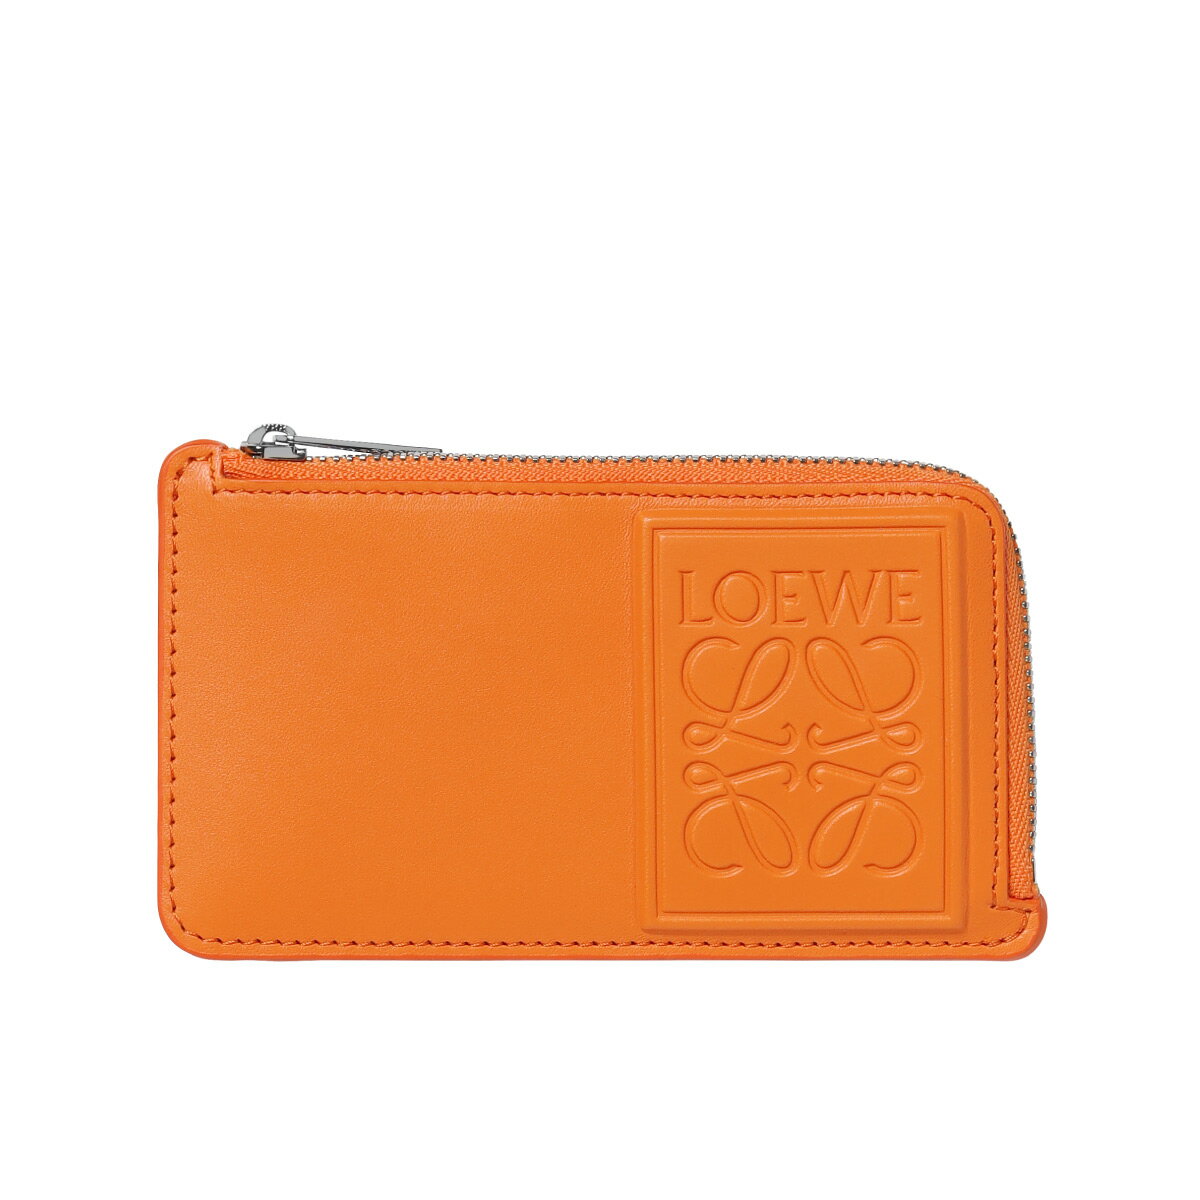 ロエベ LOEWE カードケース メンズ C565Z40X01 9120 BRIGHT ORANGE オレンジ